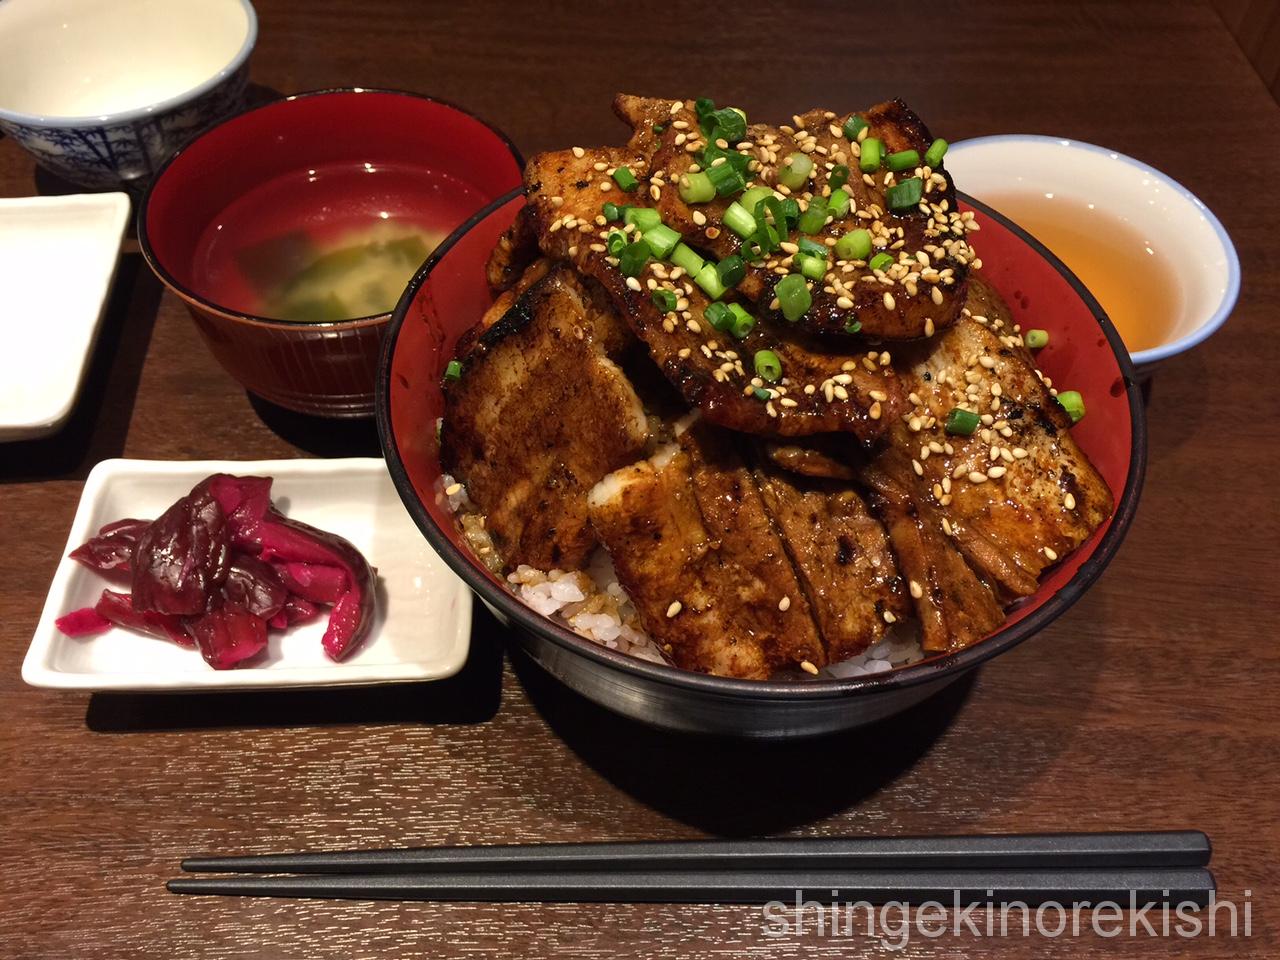 神田デカ盛りランチ魚串さくらさく炭火豚丼ご飯特盛肉増し居酒屋9